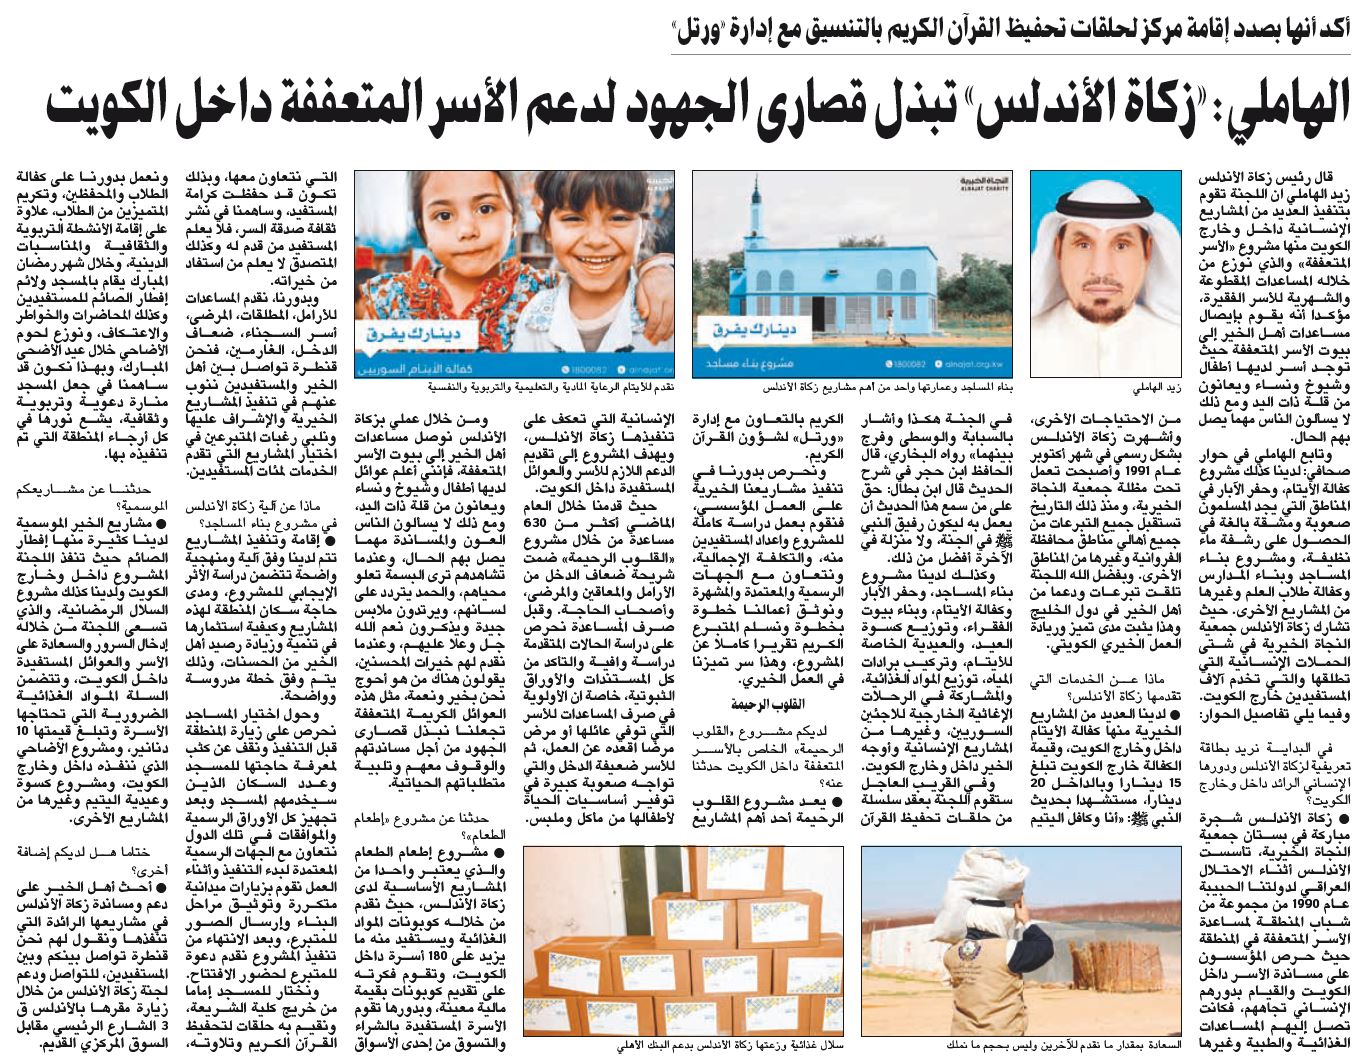 «زكاة الأندلس»: نبذل قصارى الجهود لدعم الأسر المتعففة داخل الكويت